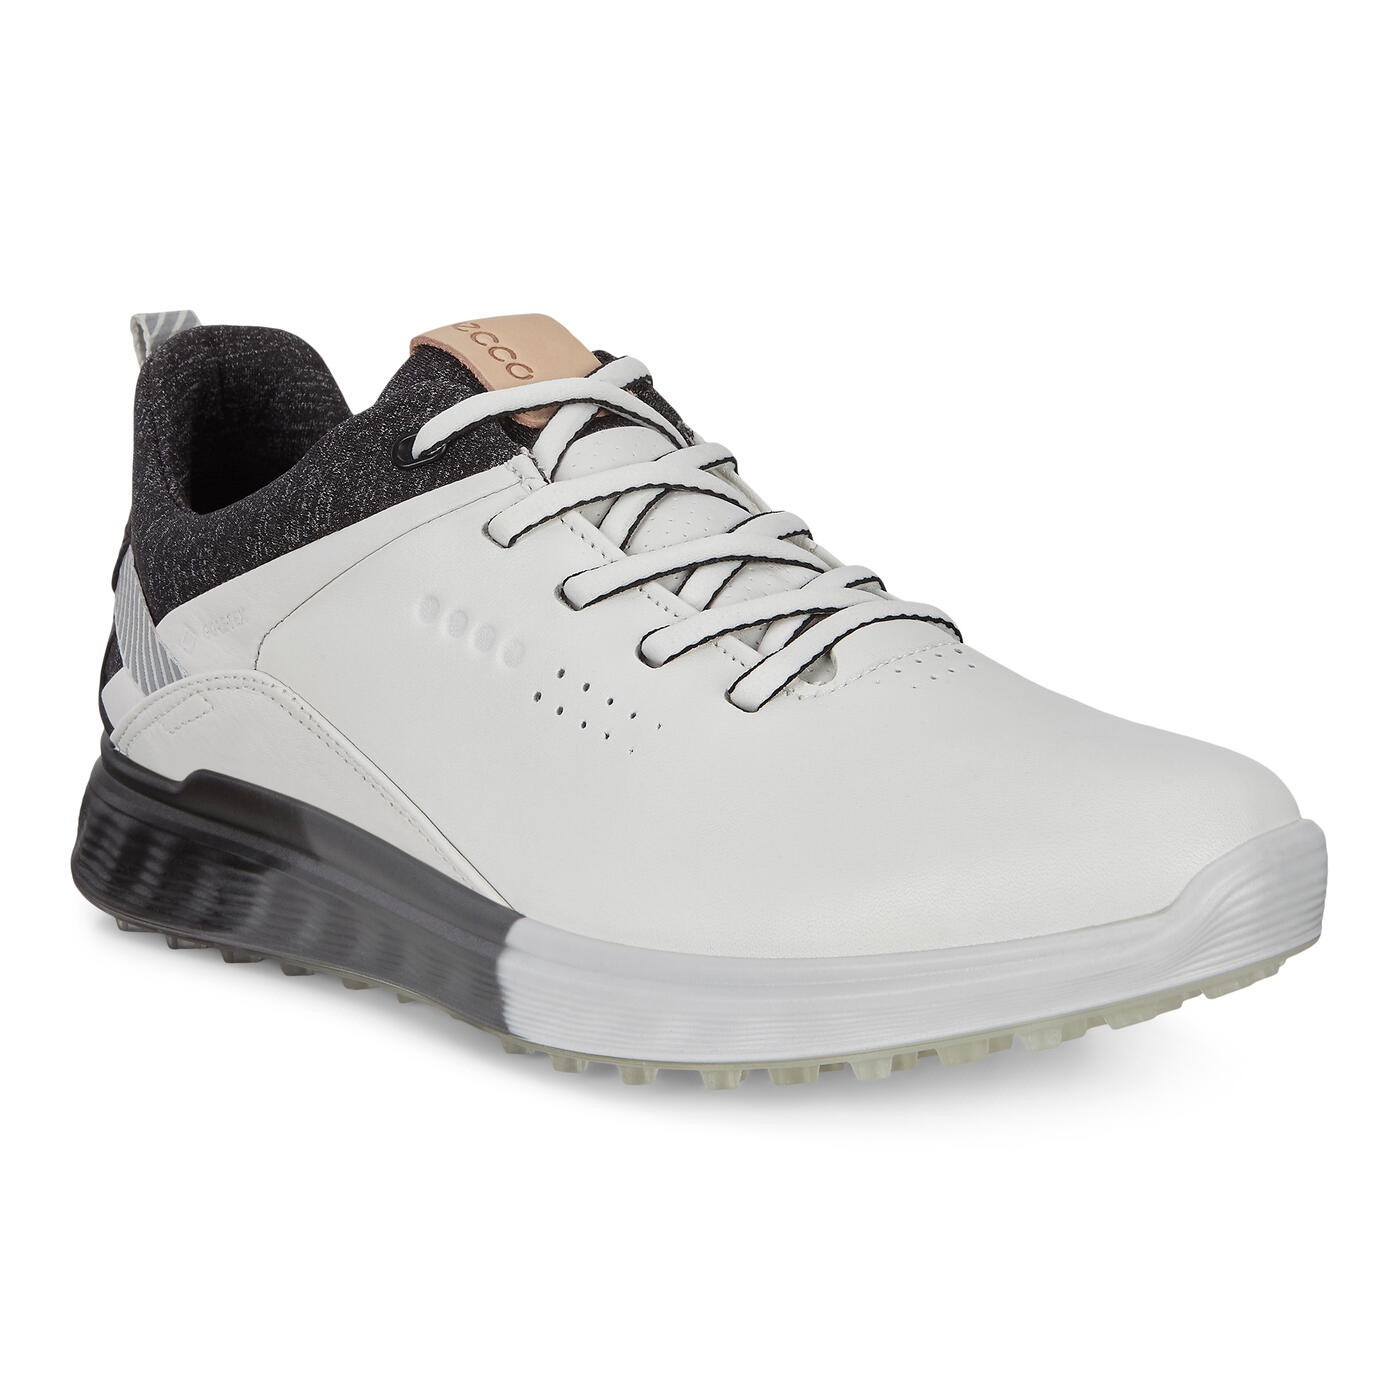 ECCO Women's S-Three Spikeless Golf Shoes | Women's Spikeless Golf ...